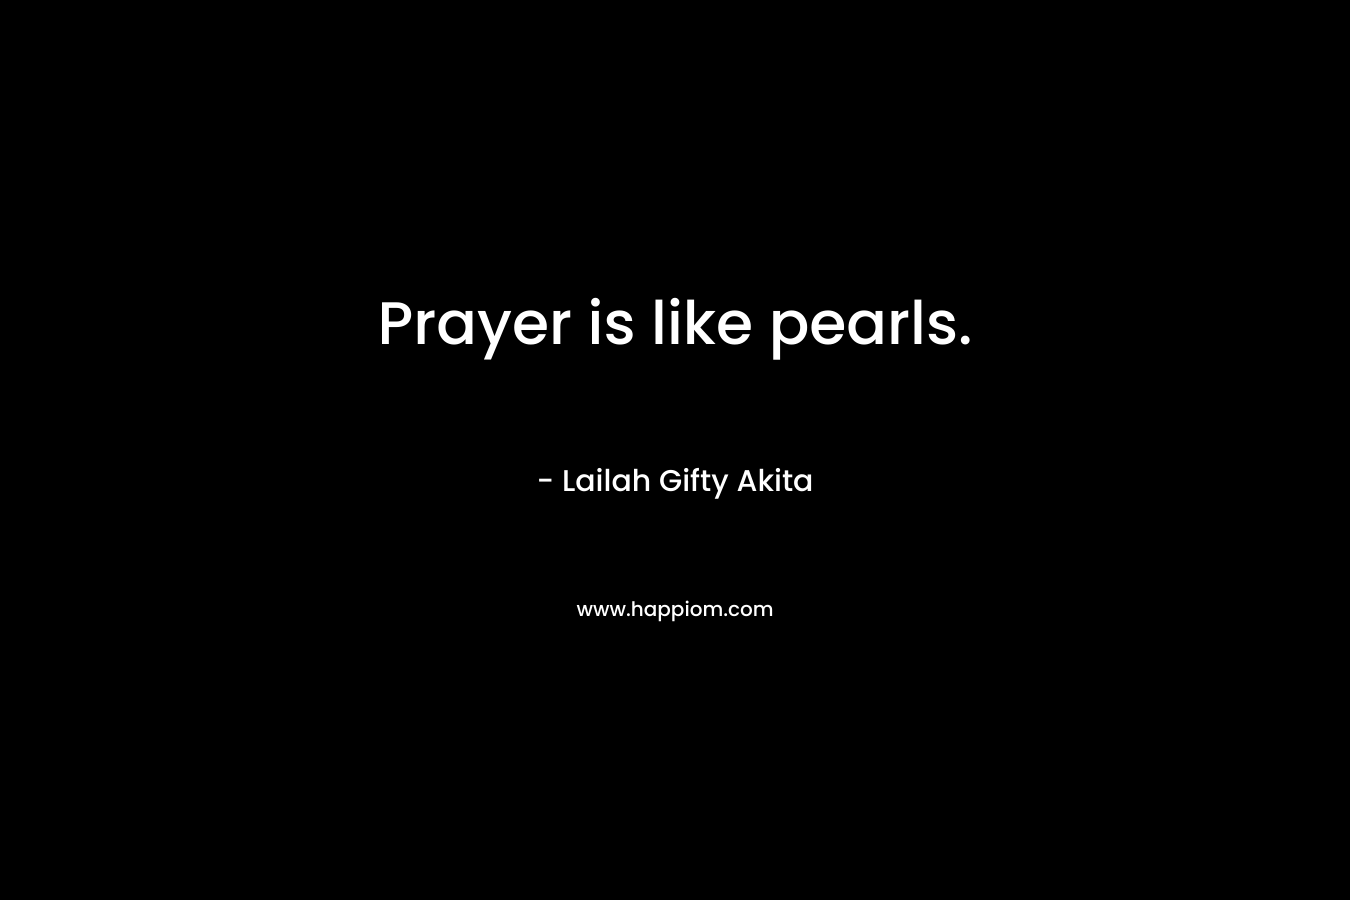 Prayer is like pearls.